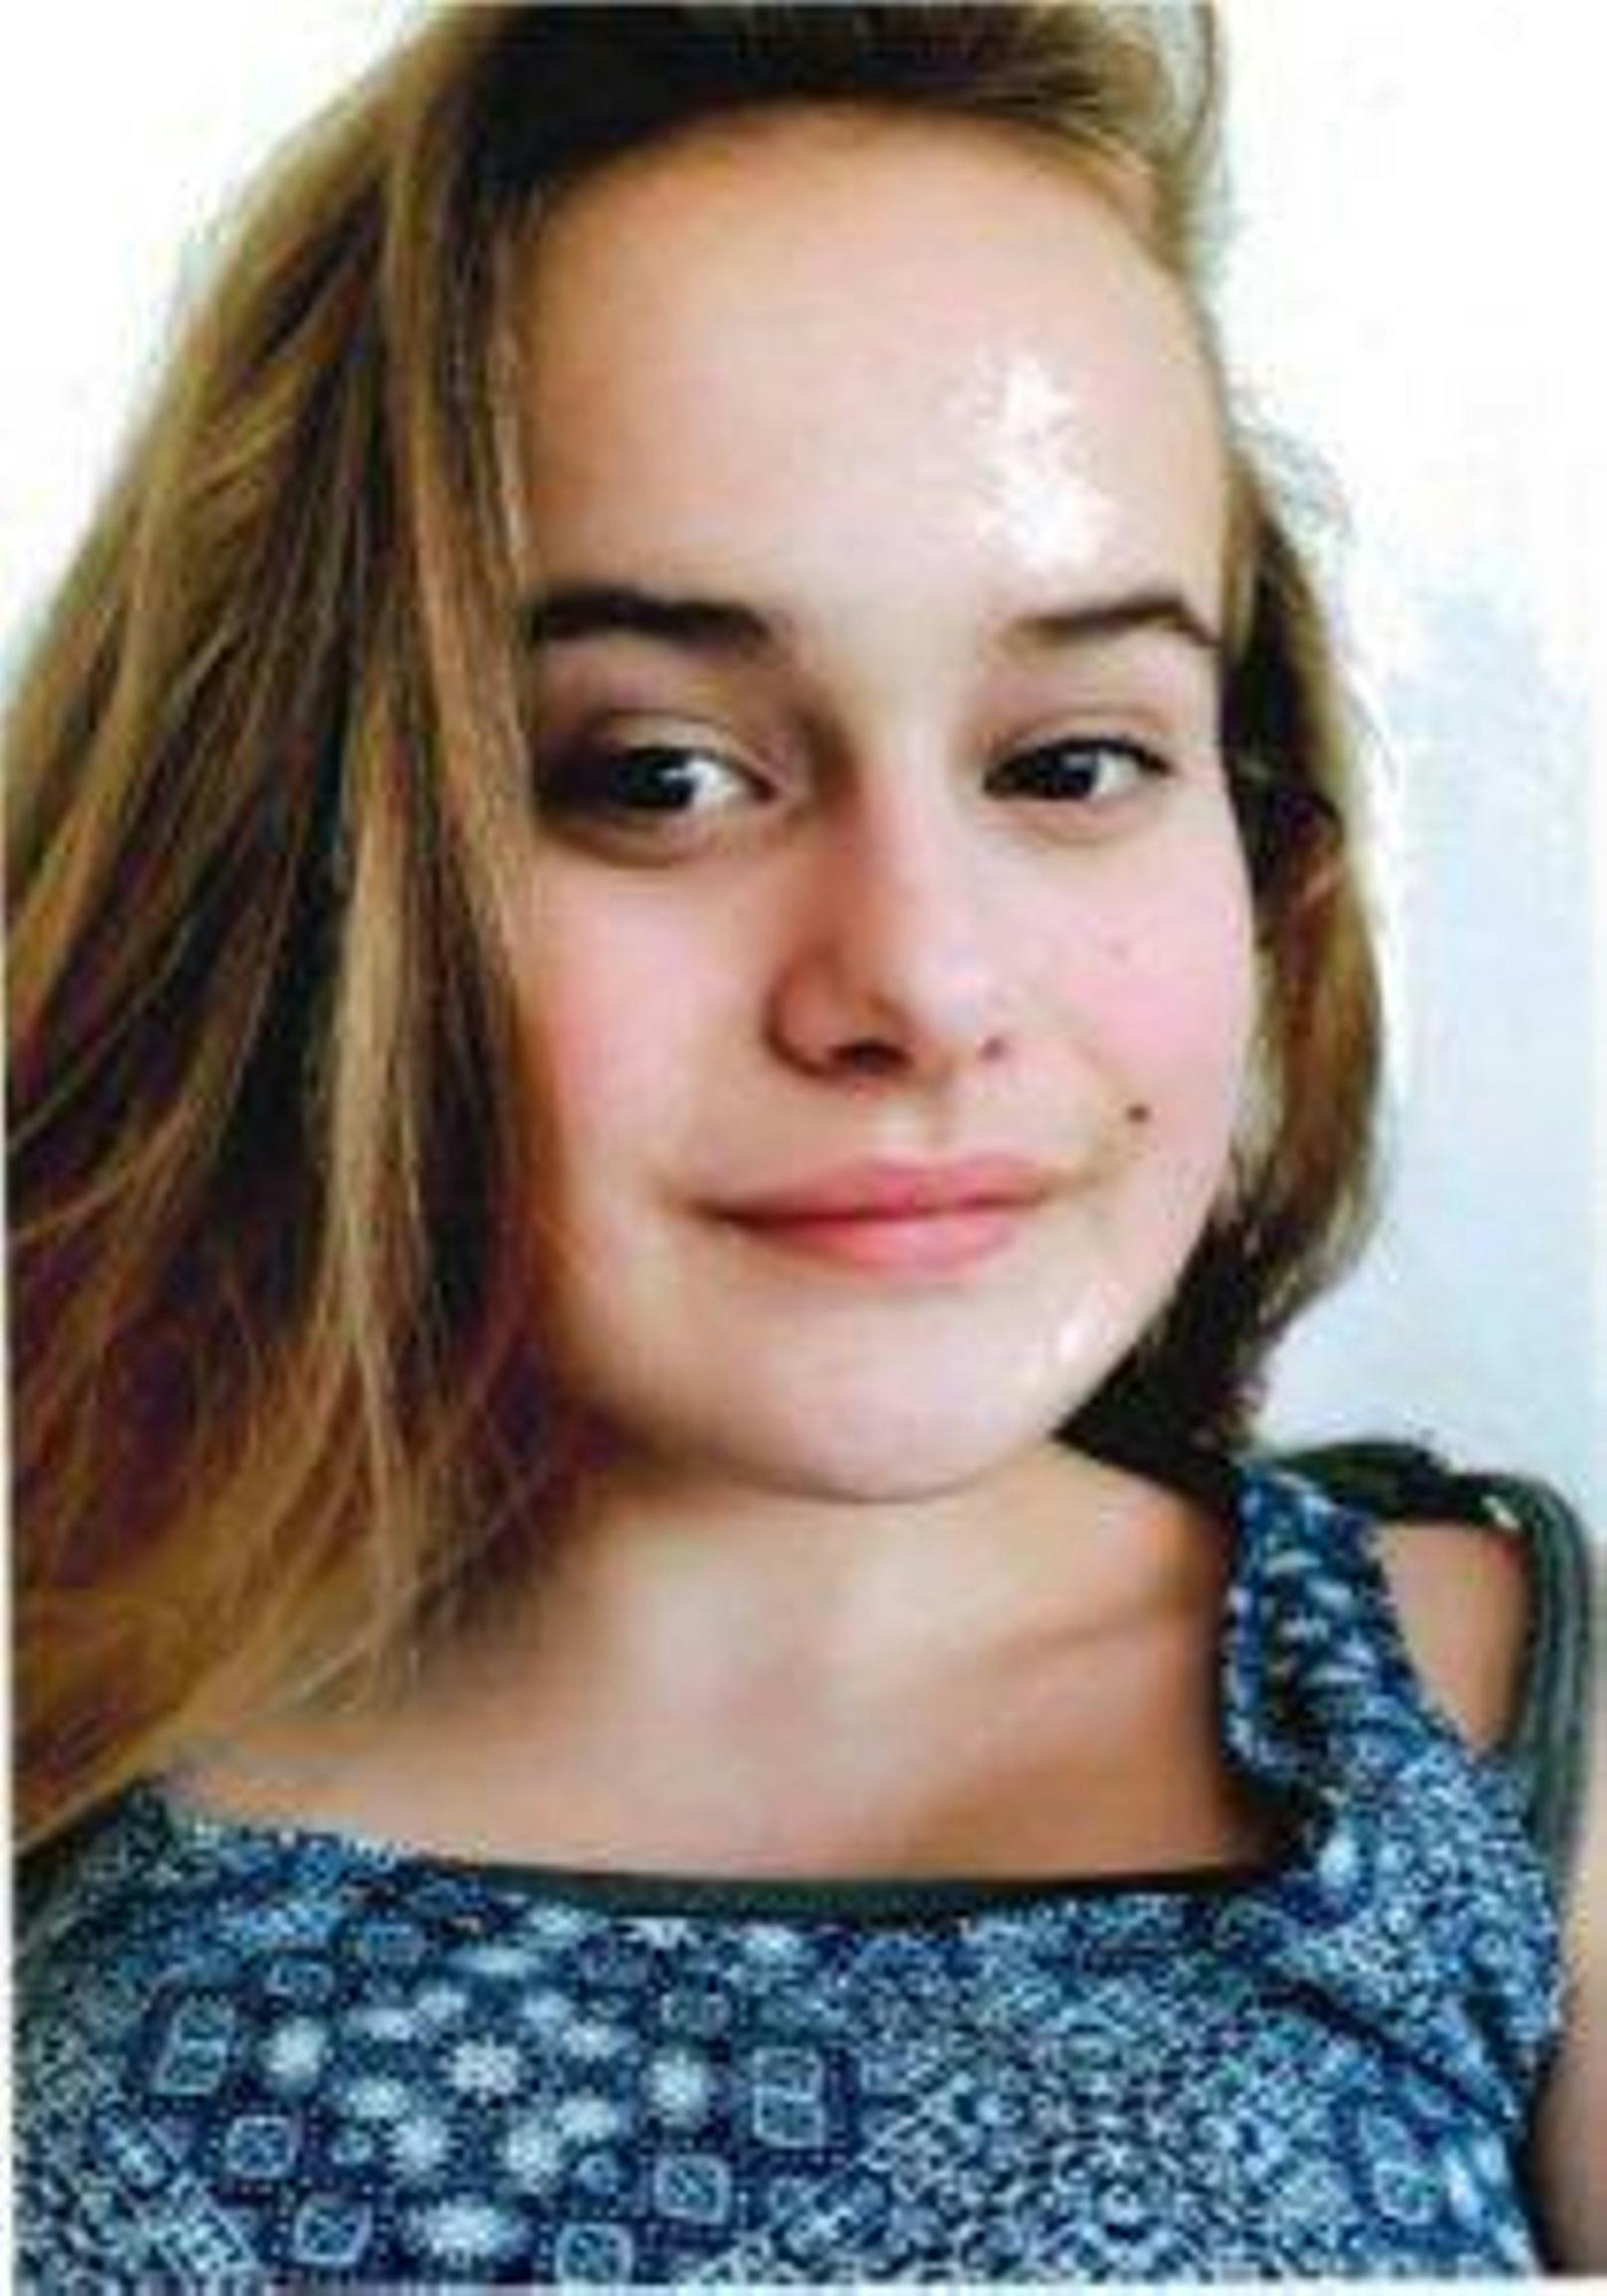 Diese 16-Jährige wird vermisst.